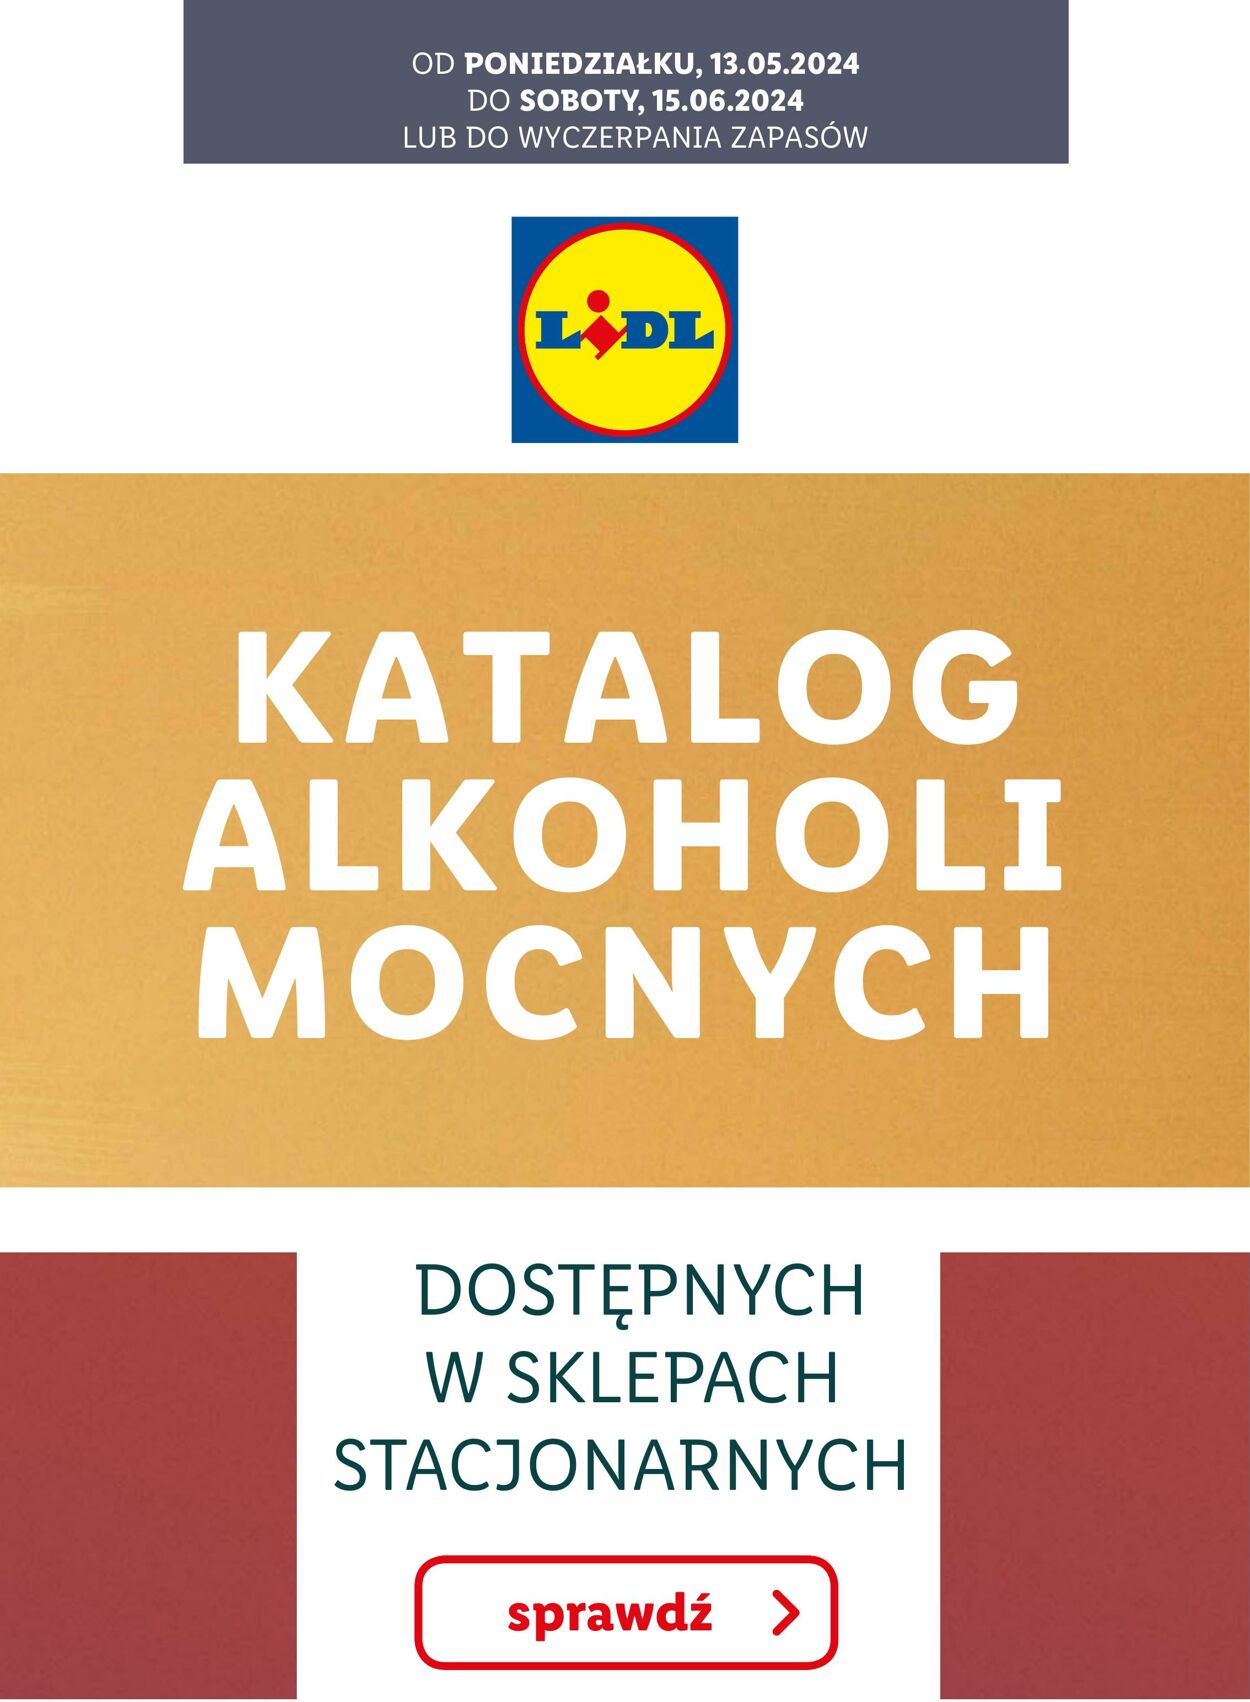 Gazetka Lidl - KATALOG ALKOHOLI MOCNYCH 13 maj, 2024 - 15 cze, 2024